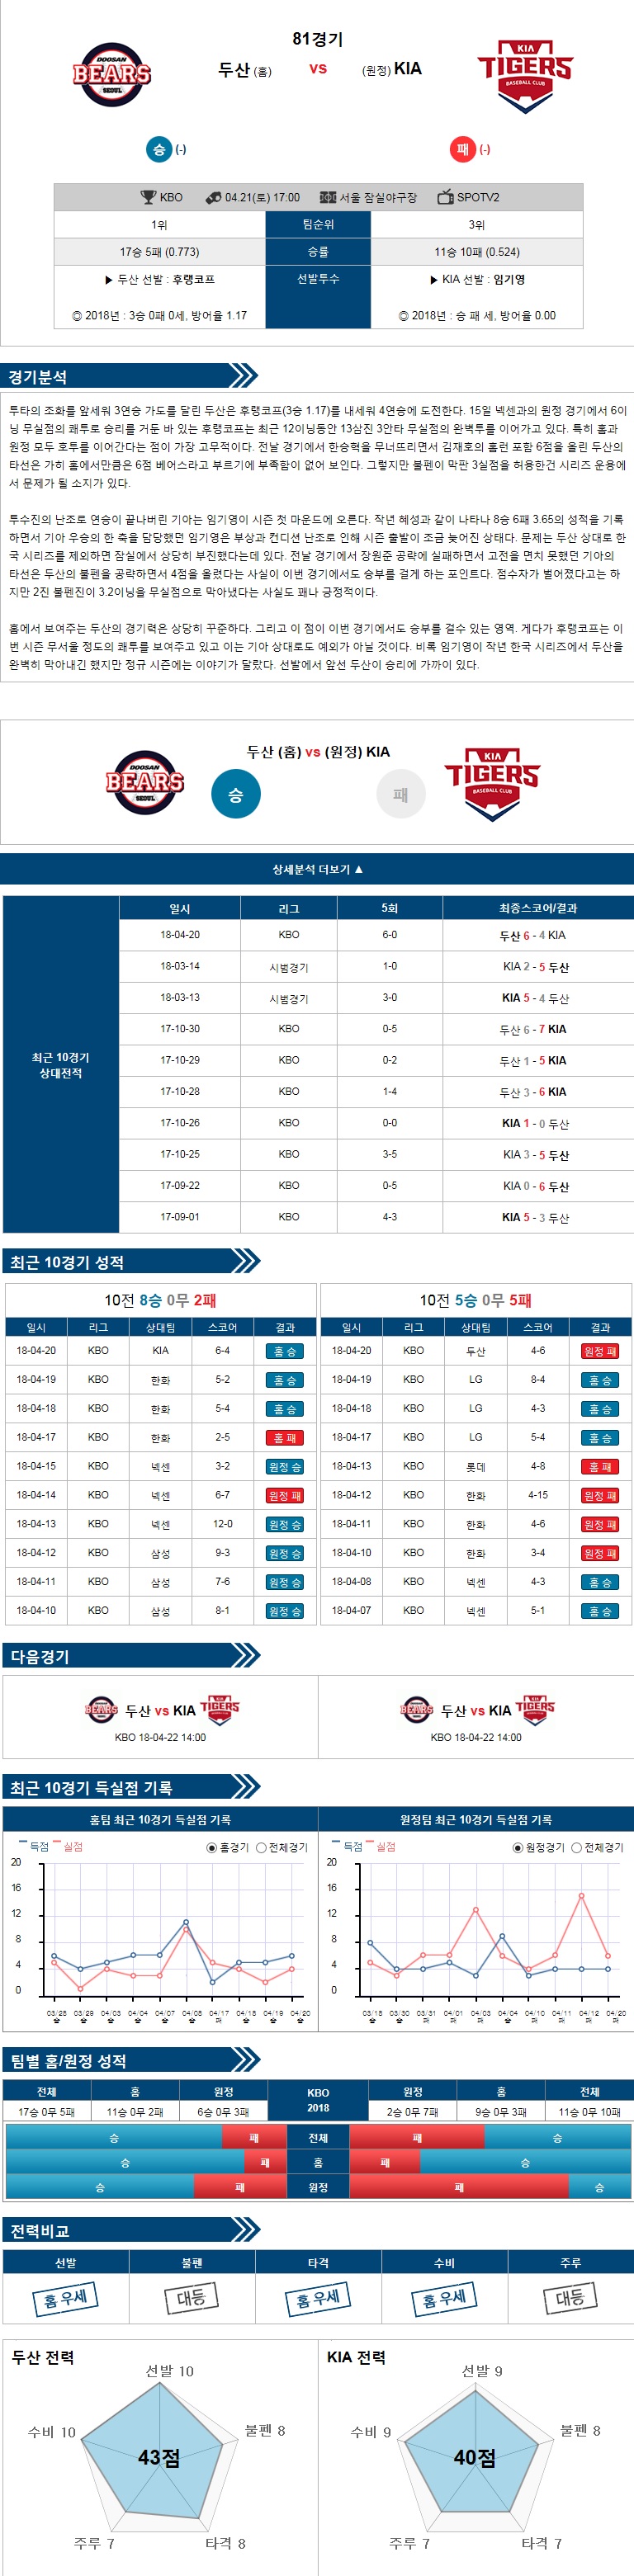 4-21 [KBO] 17:00 야구분석 두산 vs KIA